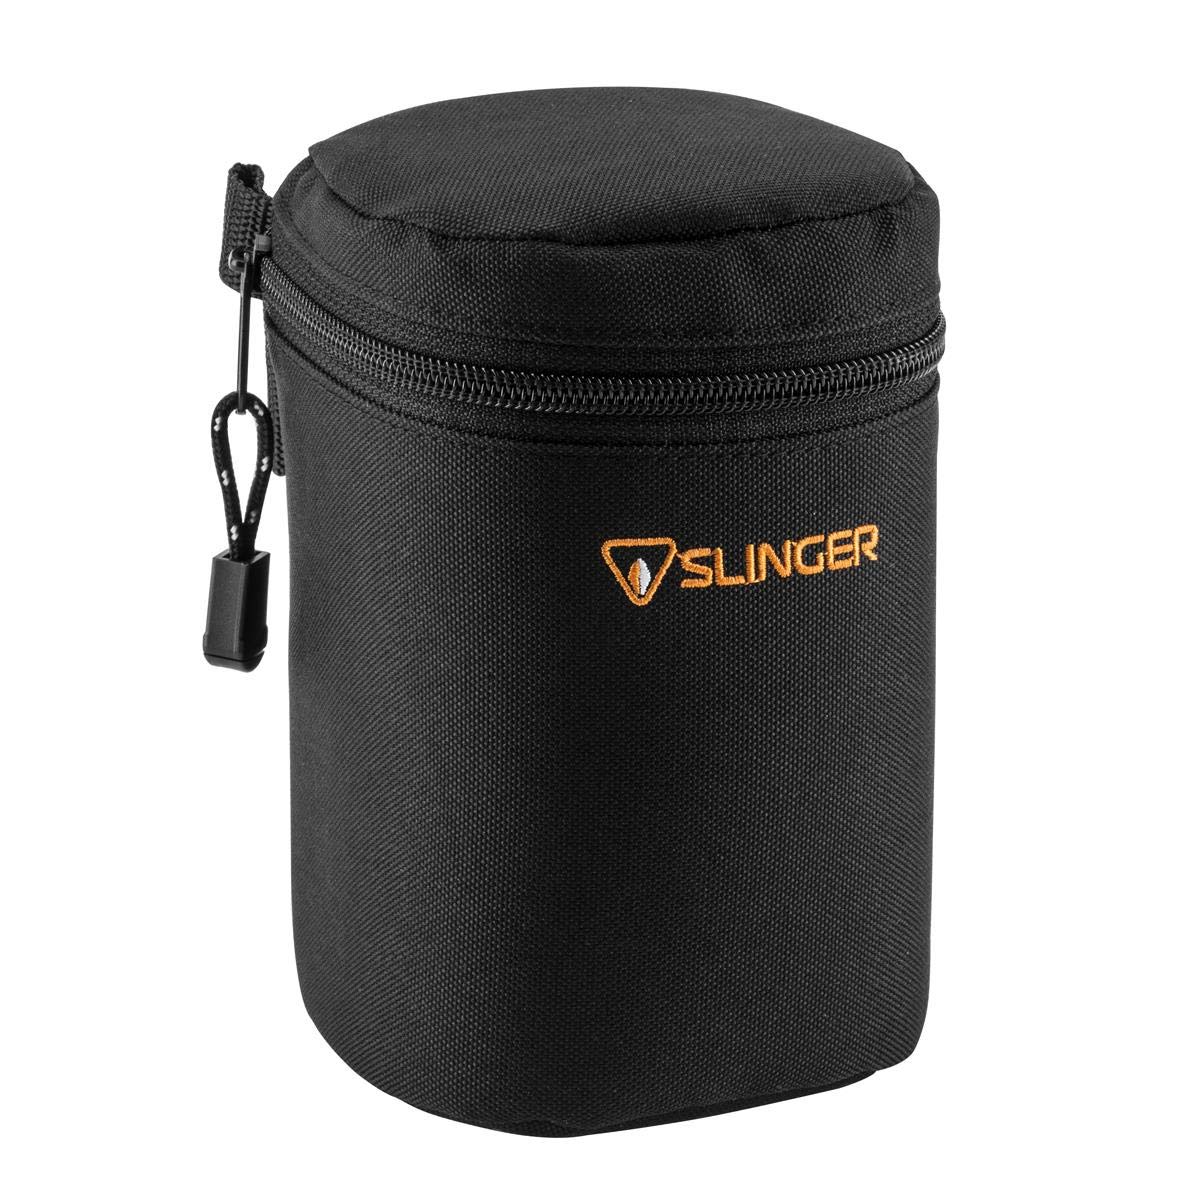 Slinger Slinger Soft Lens Case Medium, 6.5